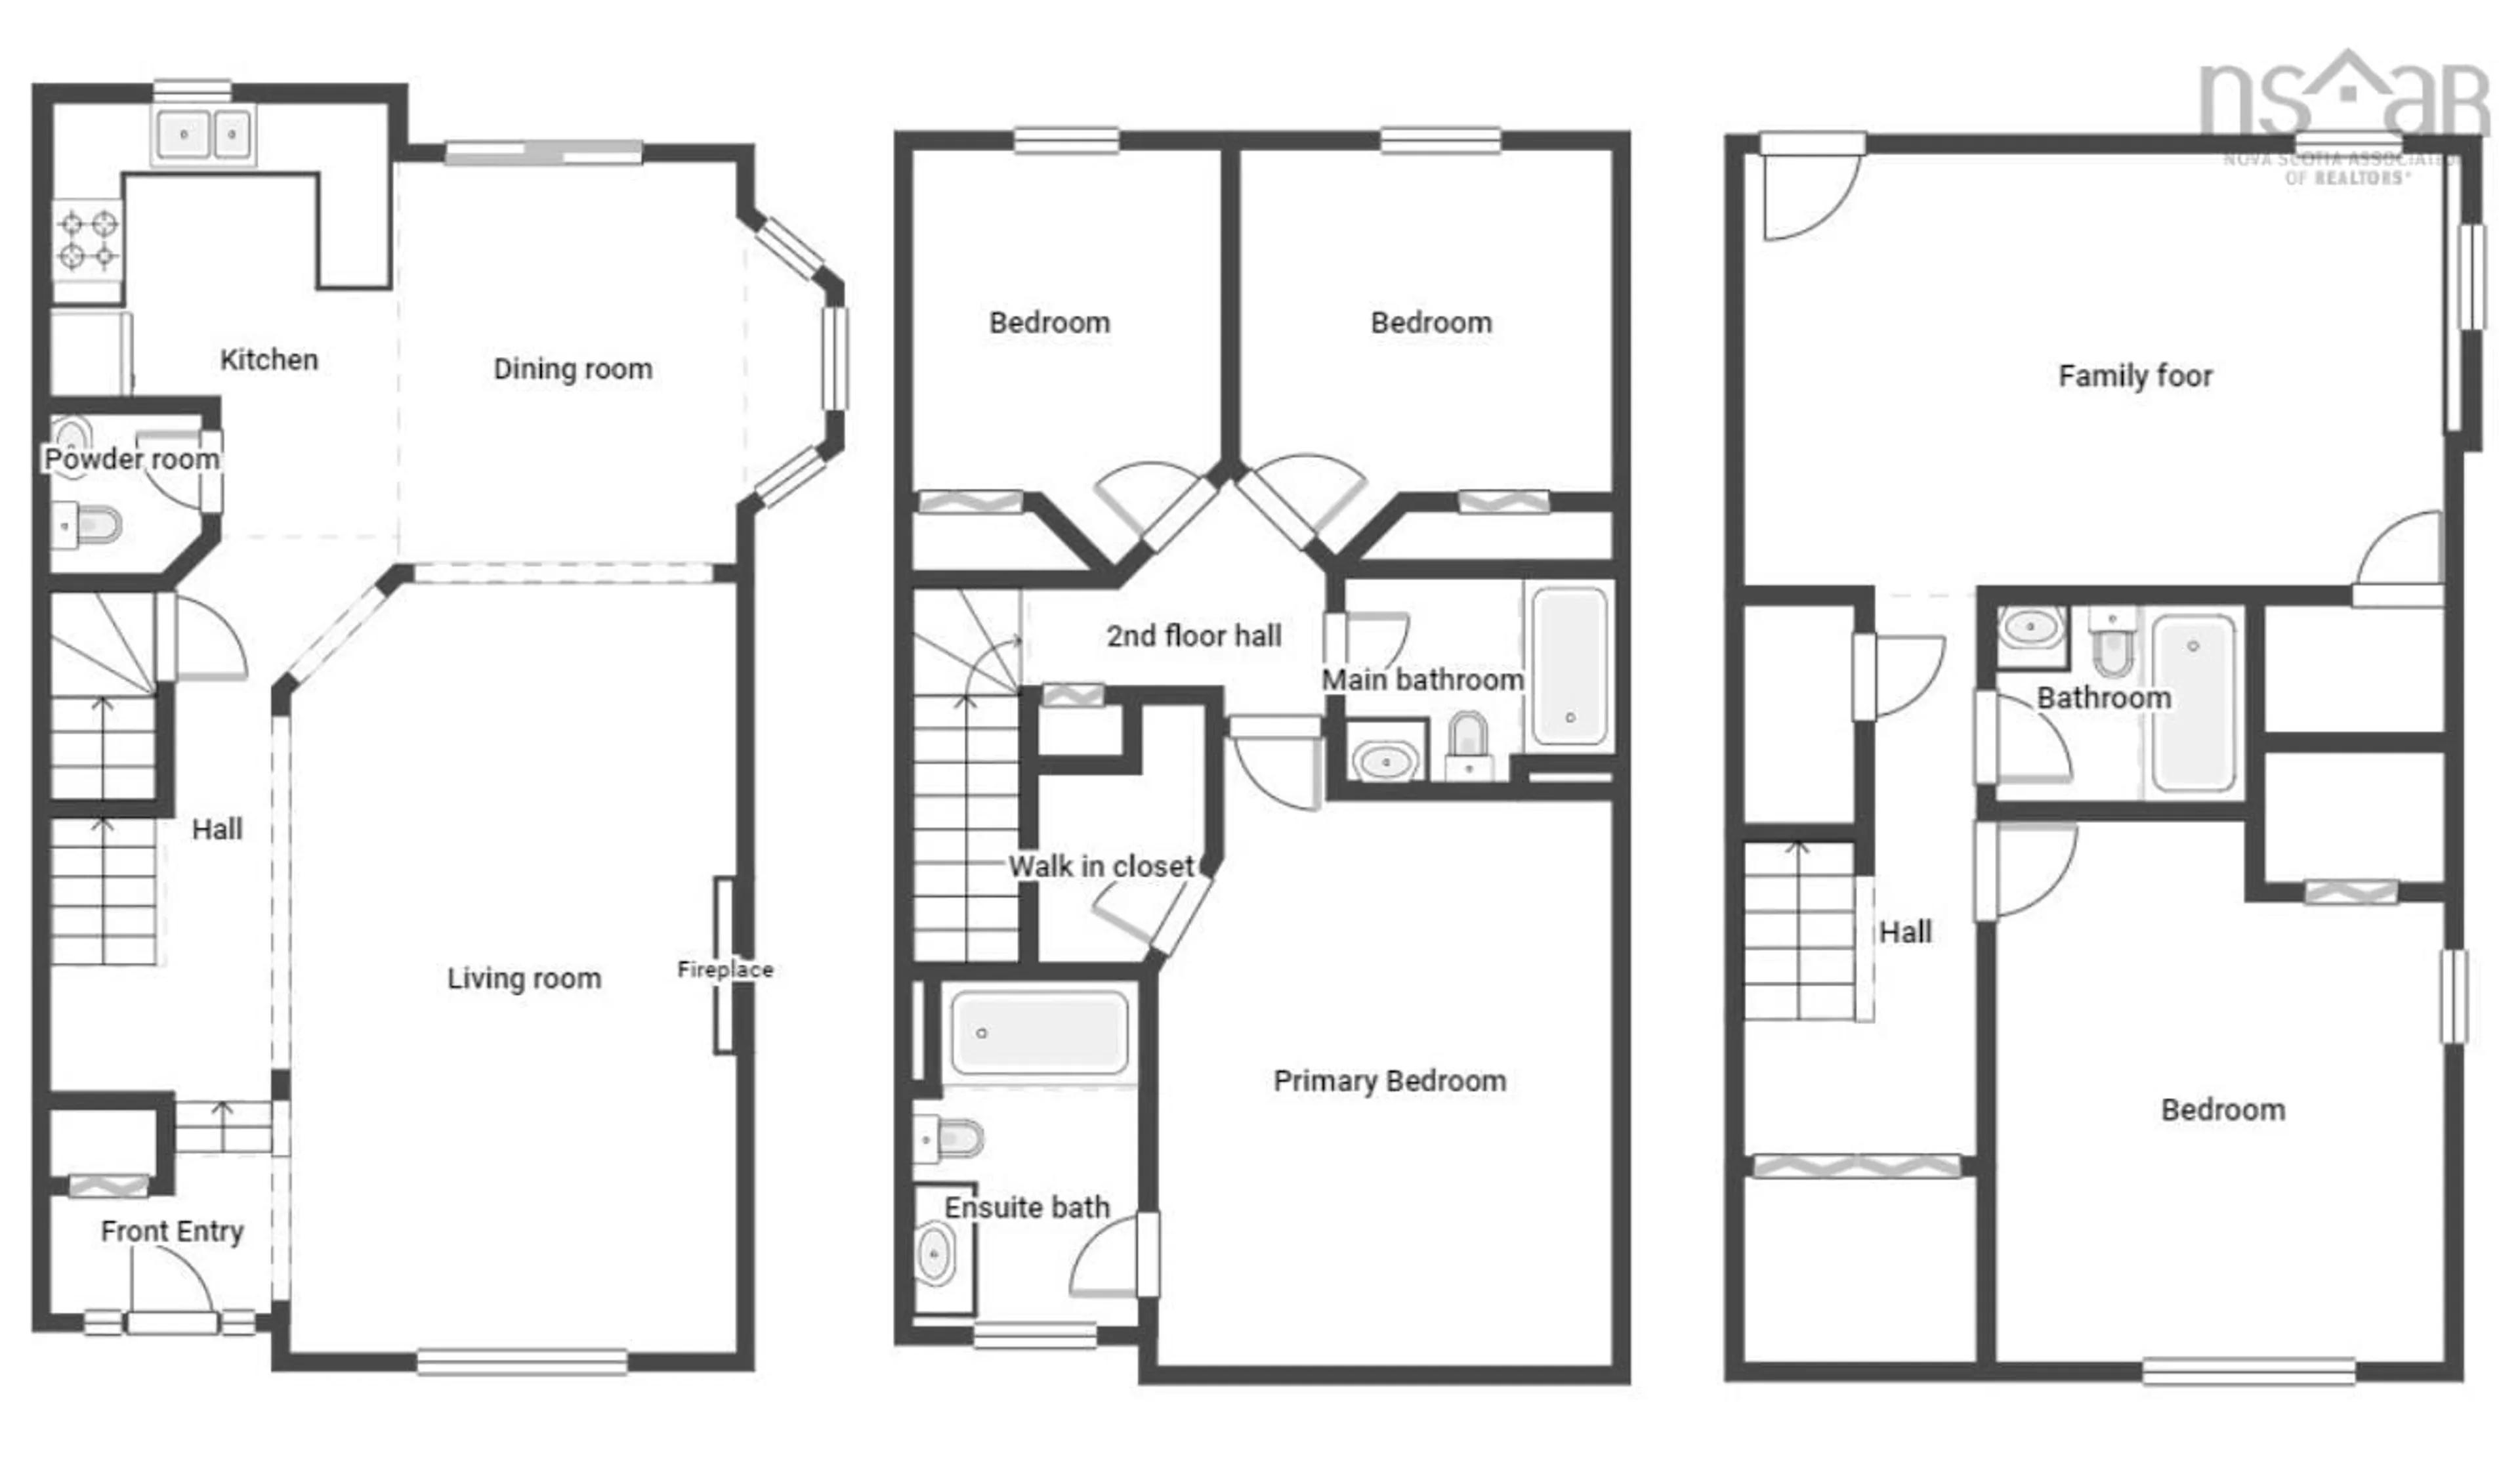 Floor plan for 210 Oceanview Dr, Bedford Nova Scotia B4A 4G9